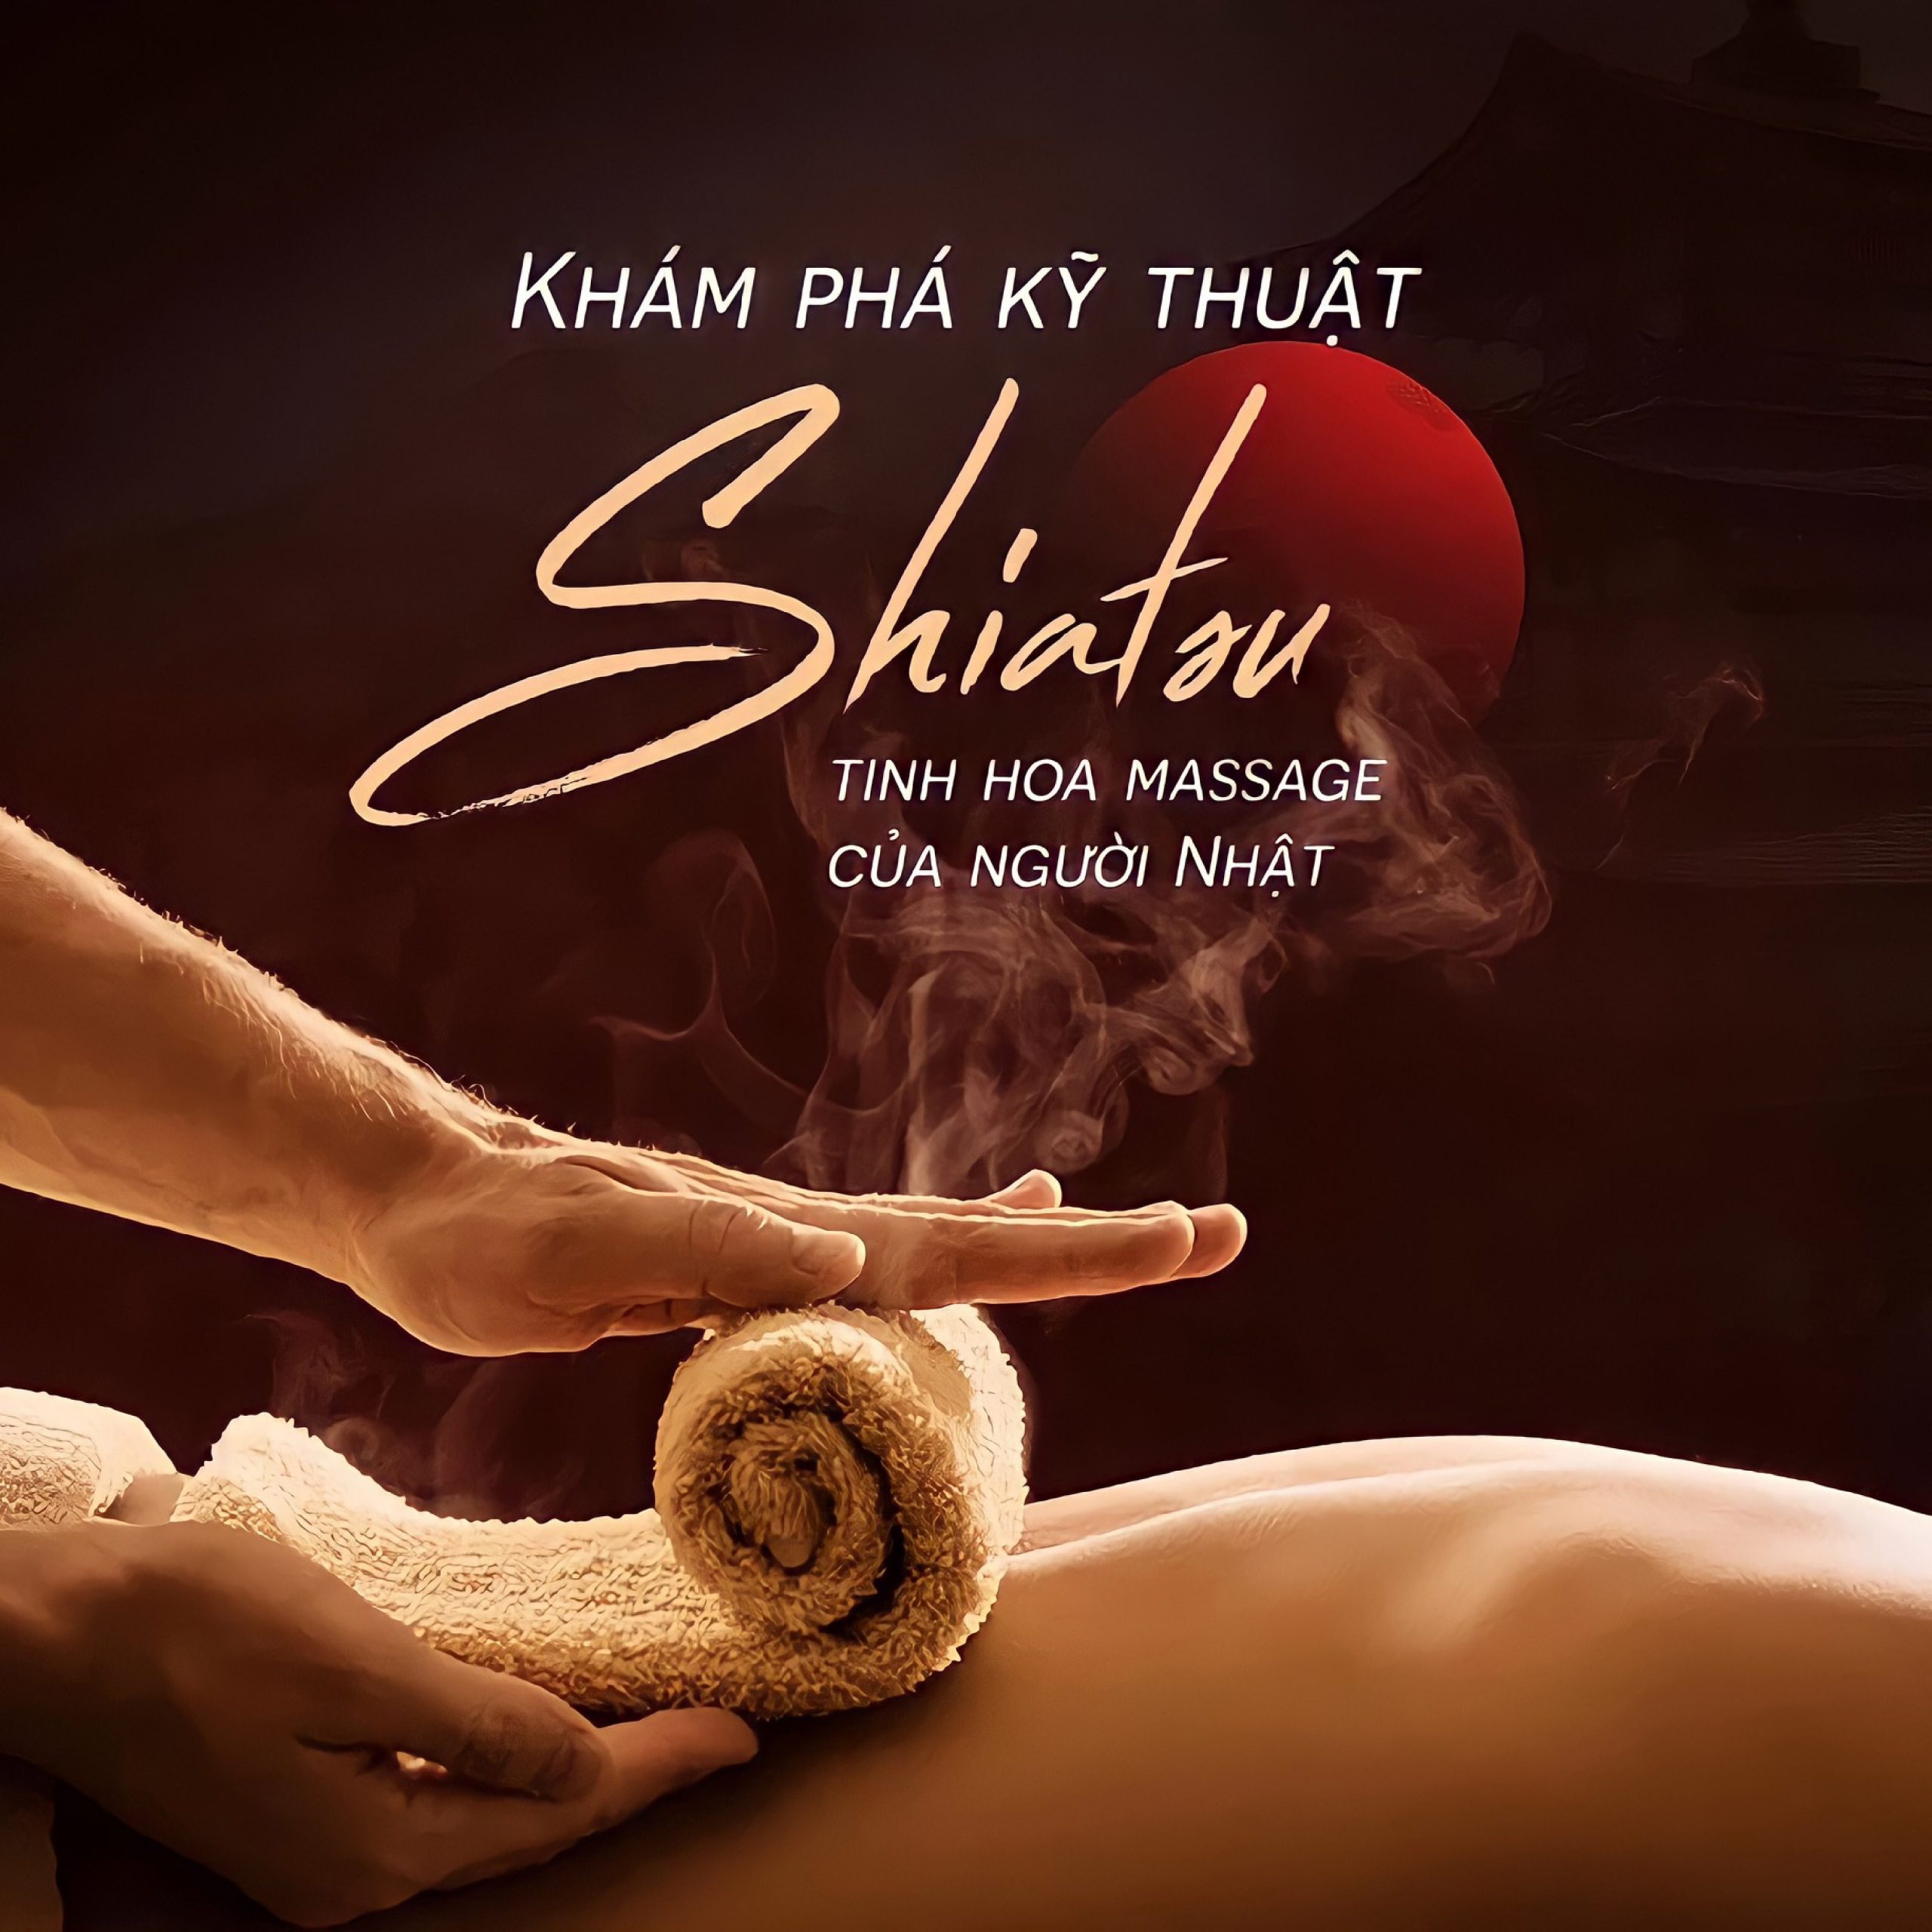 Phương pháp massage Shiatsu cổ truyền của Nhật Bản